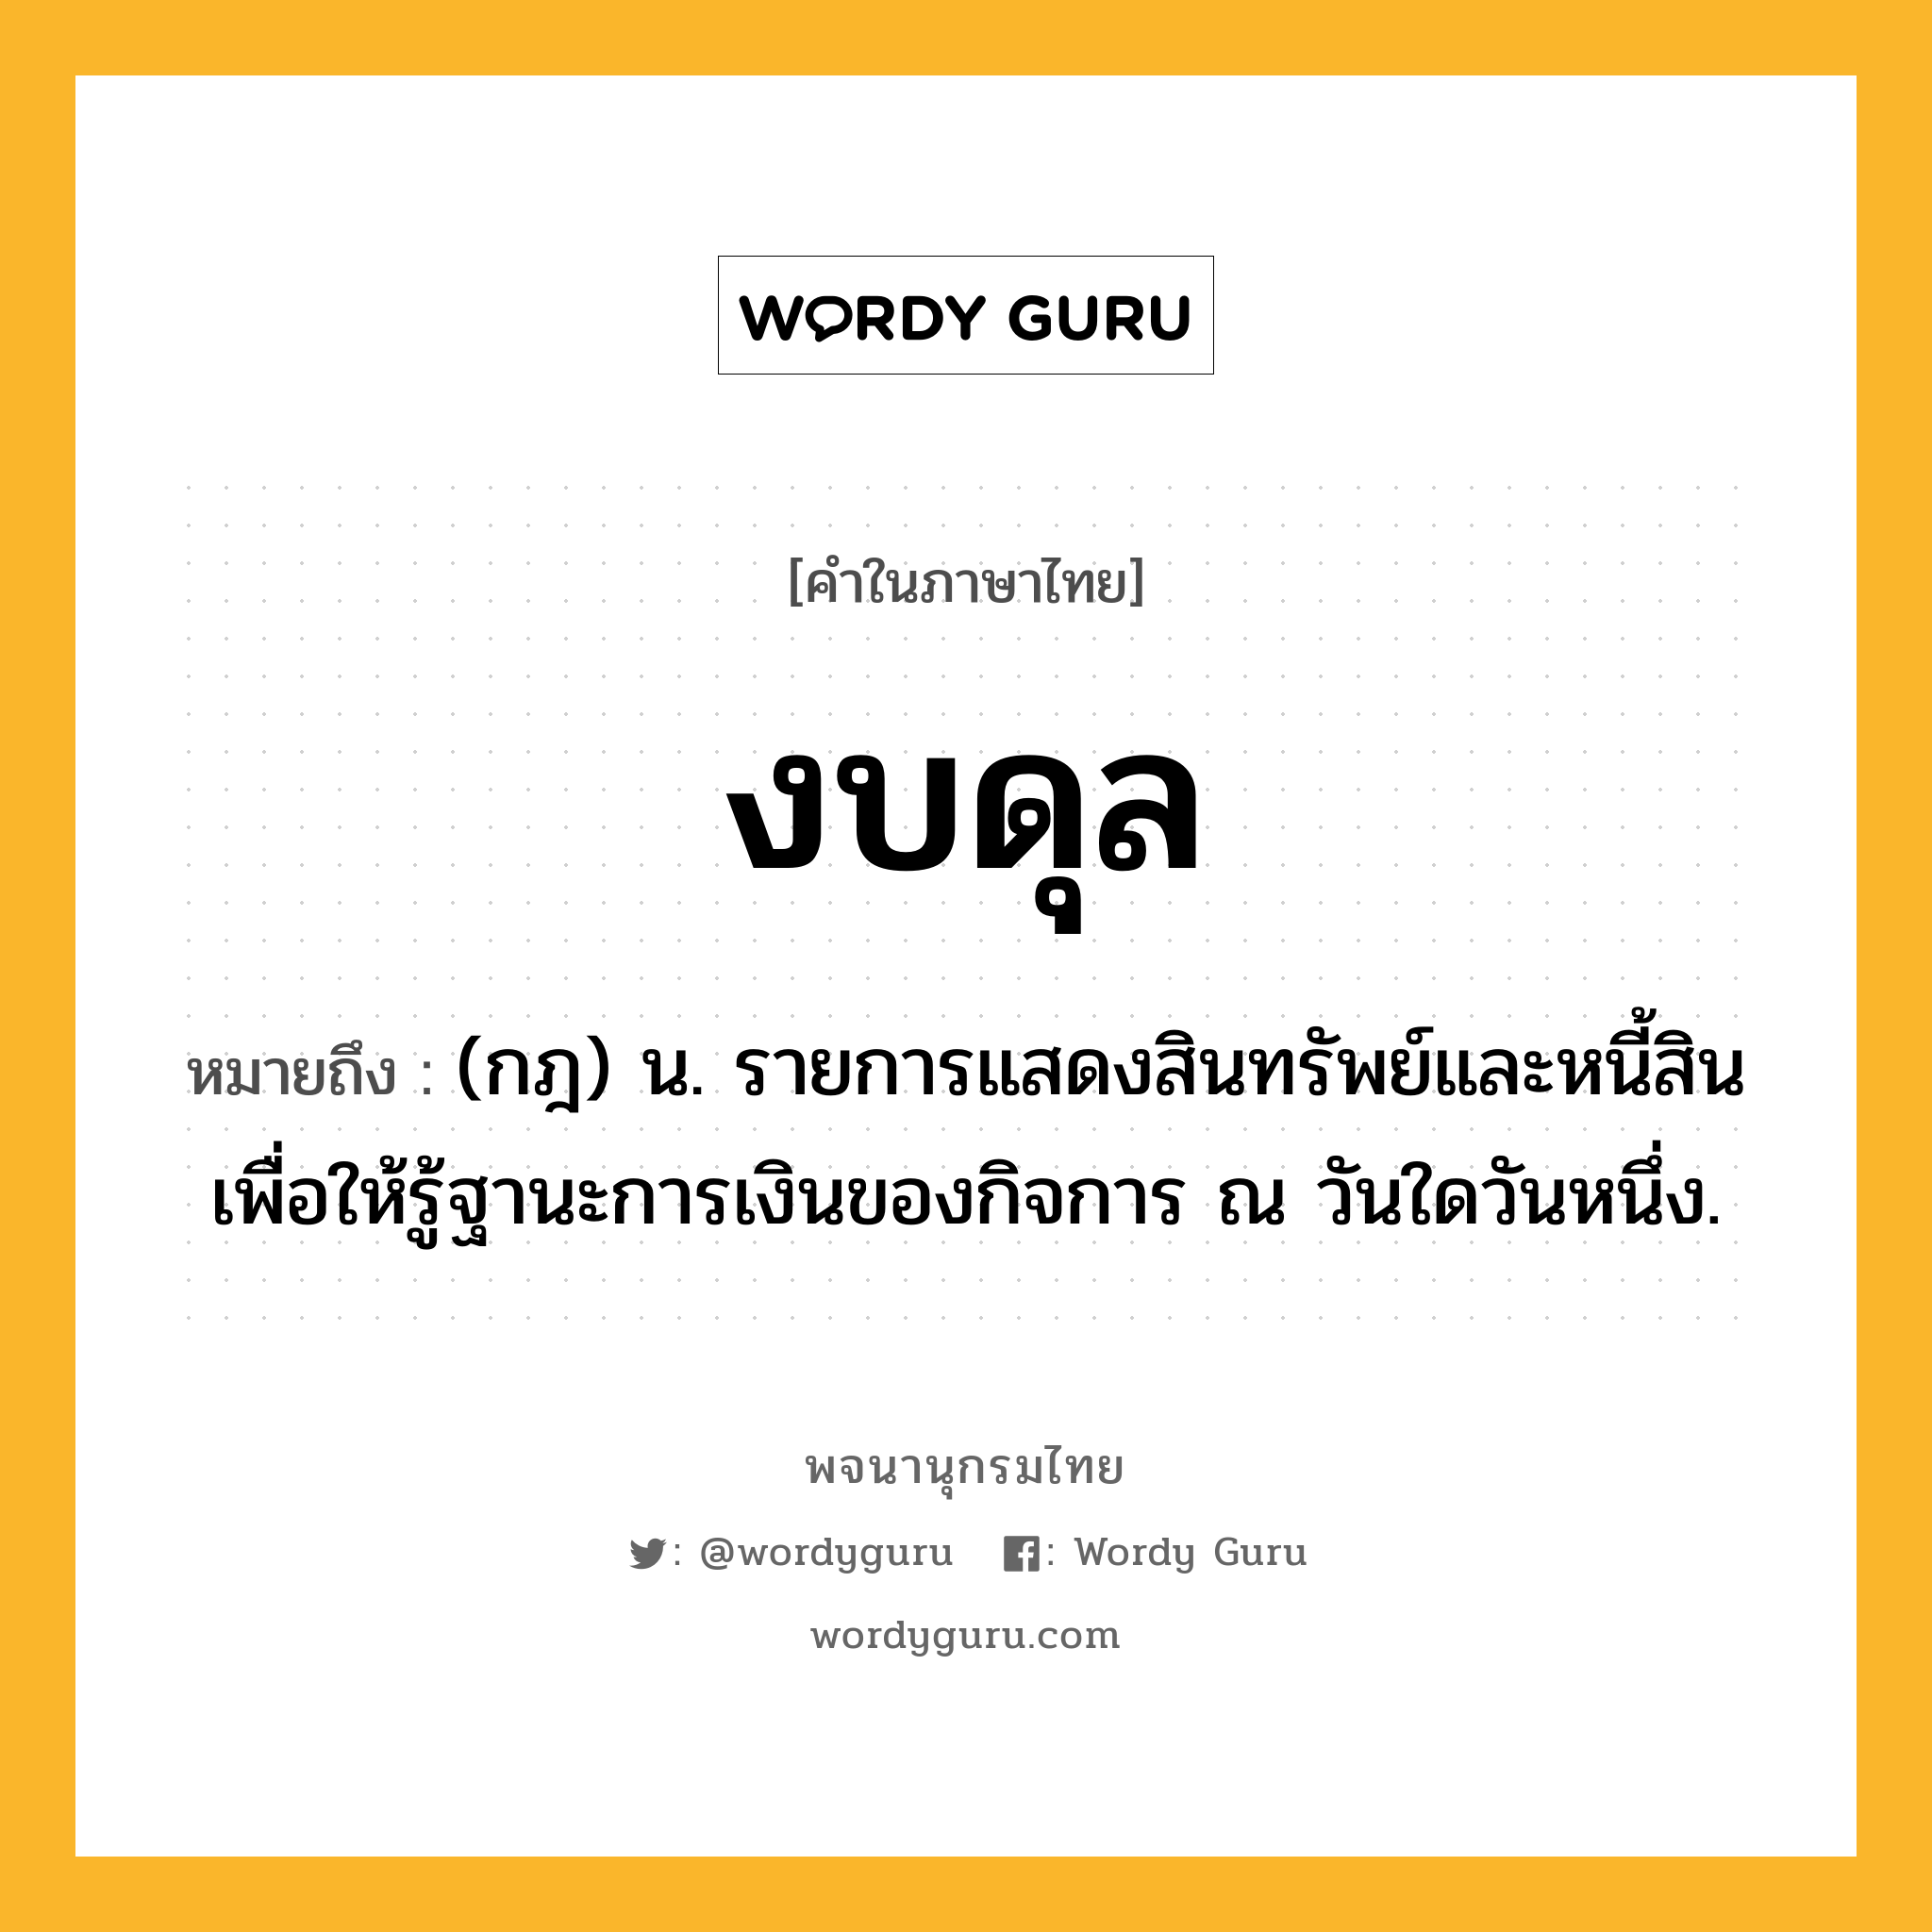 งบดุล หมายถึงอะไร?, คำในภาษาไทย งบดุล หมายถึง (กฎ) น. รายการแสดงสินทรัพย์และหนี้สิน เพื่อให้รู้ฐานะการเงินของกิจการ ณ วันใดวันหนึ่ง.